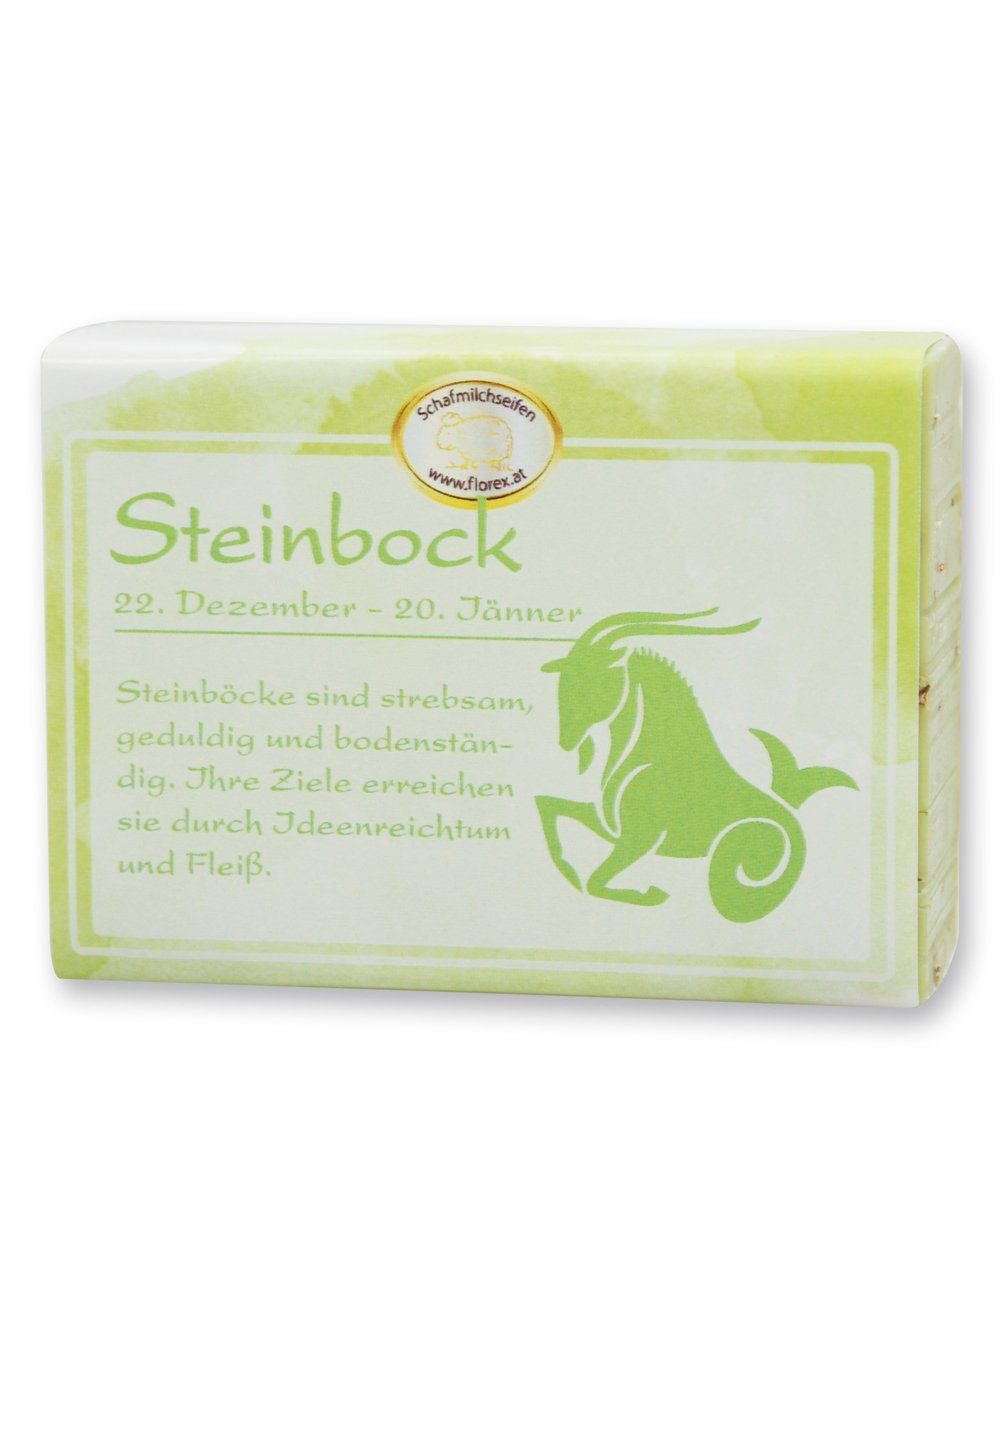 GmbH 1-tlg., Bio Steinbock 150 g, Sternzeichen _ Schafmilchseife Florex Handseife Hofer Schafmilch mit Gerlinde